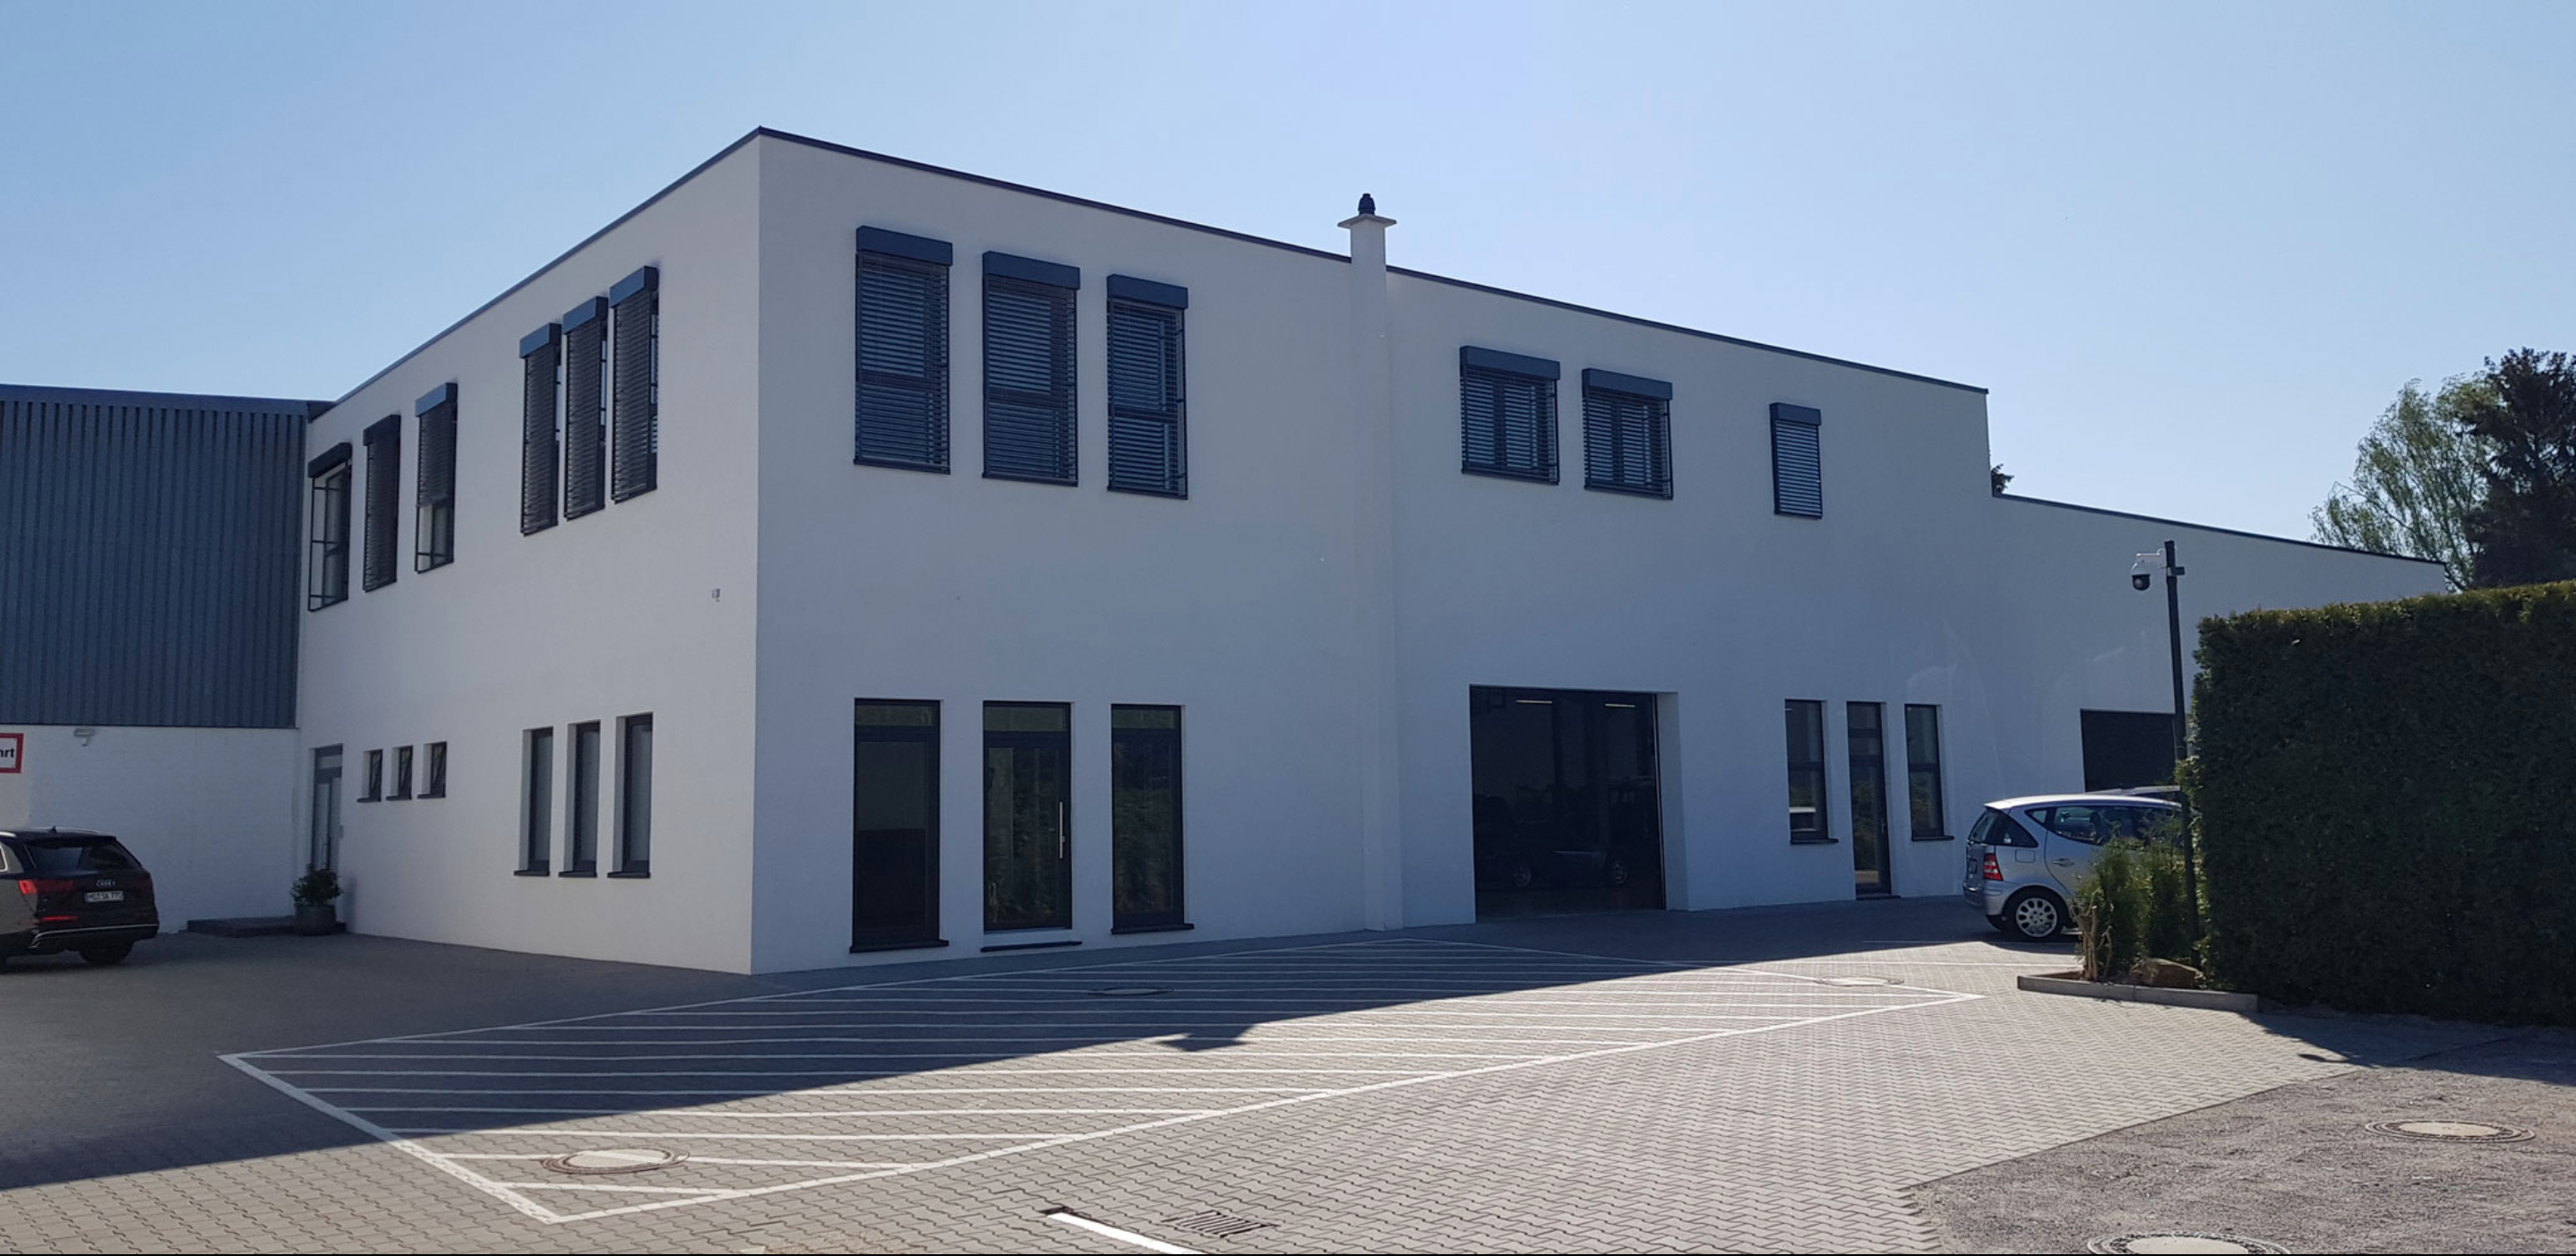 Werkstatt von außen - Karosseriebau und Lackiererei Kolahi e.k. seit 1997 in Mönchengladbach